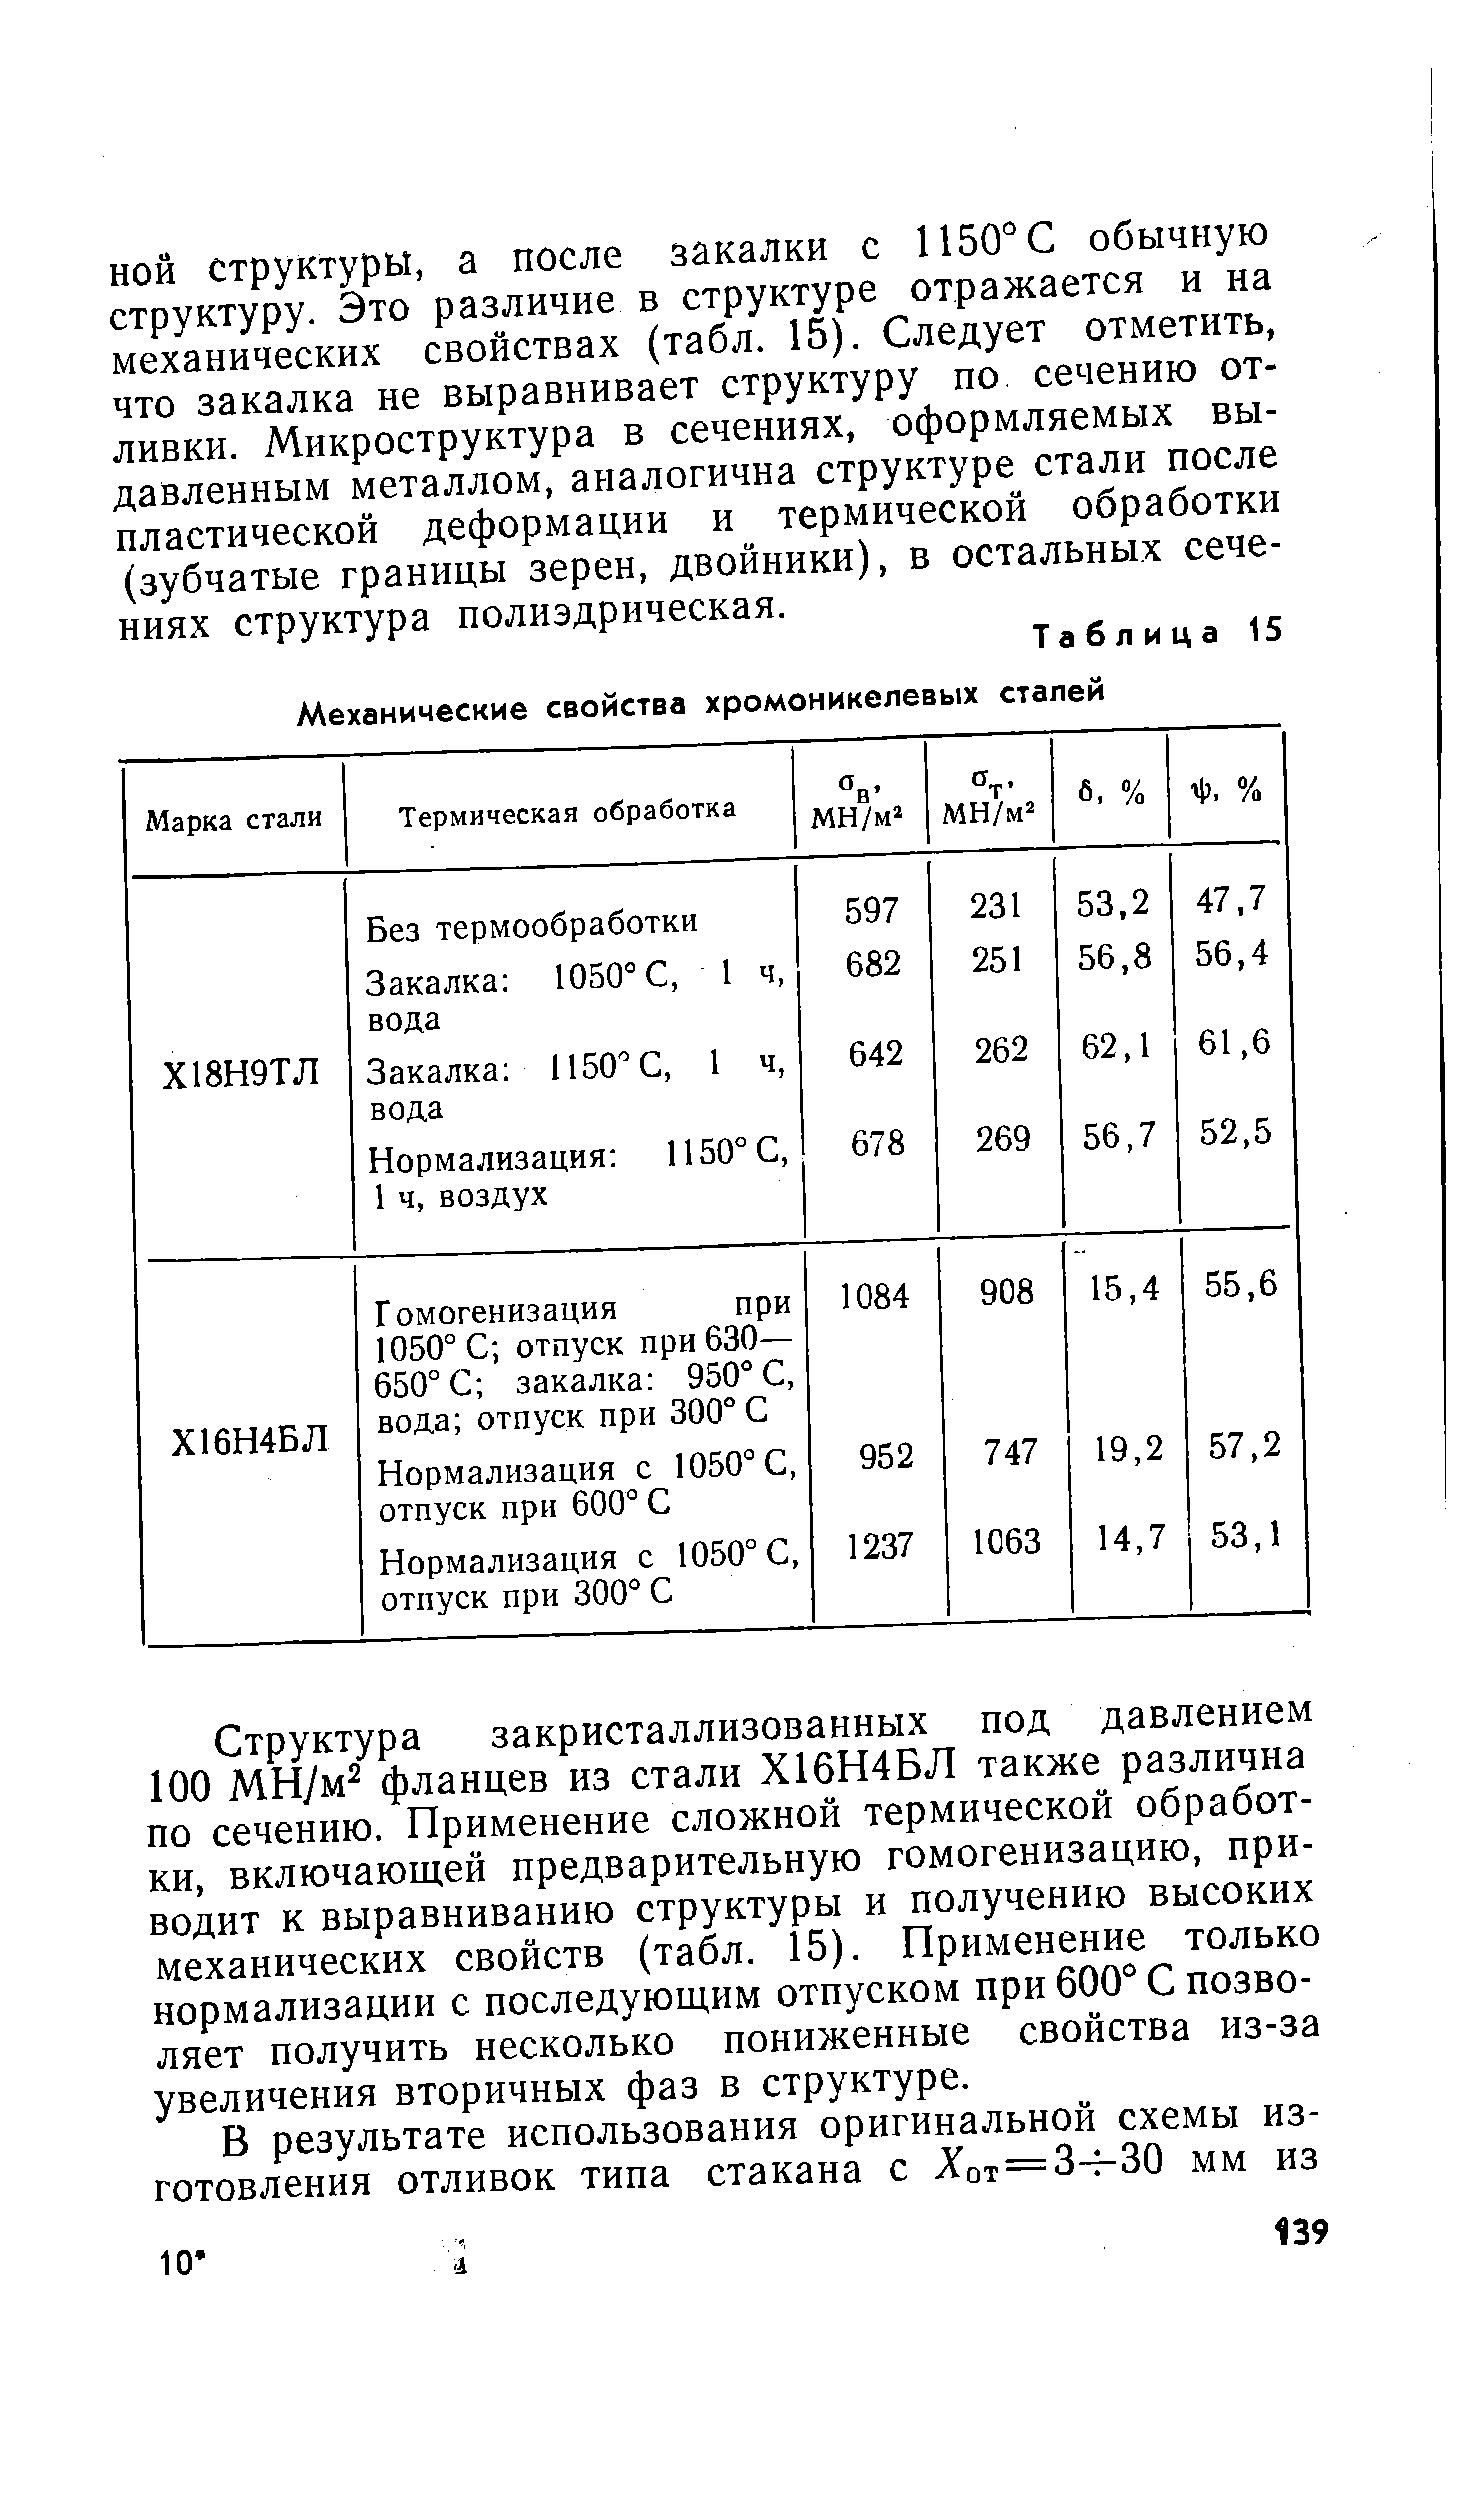 Таблица 15 Механические свойства хромоникелевых сталей
